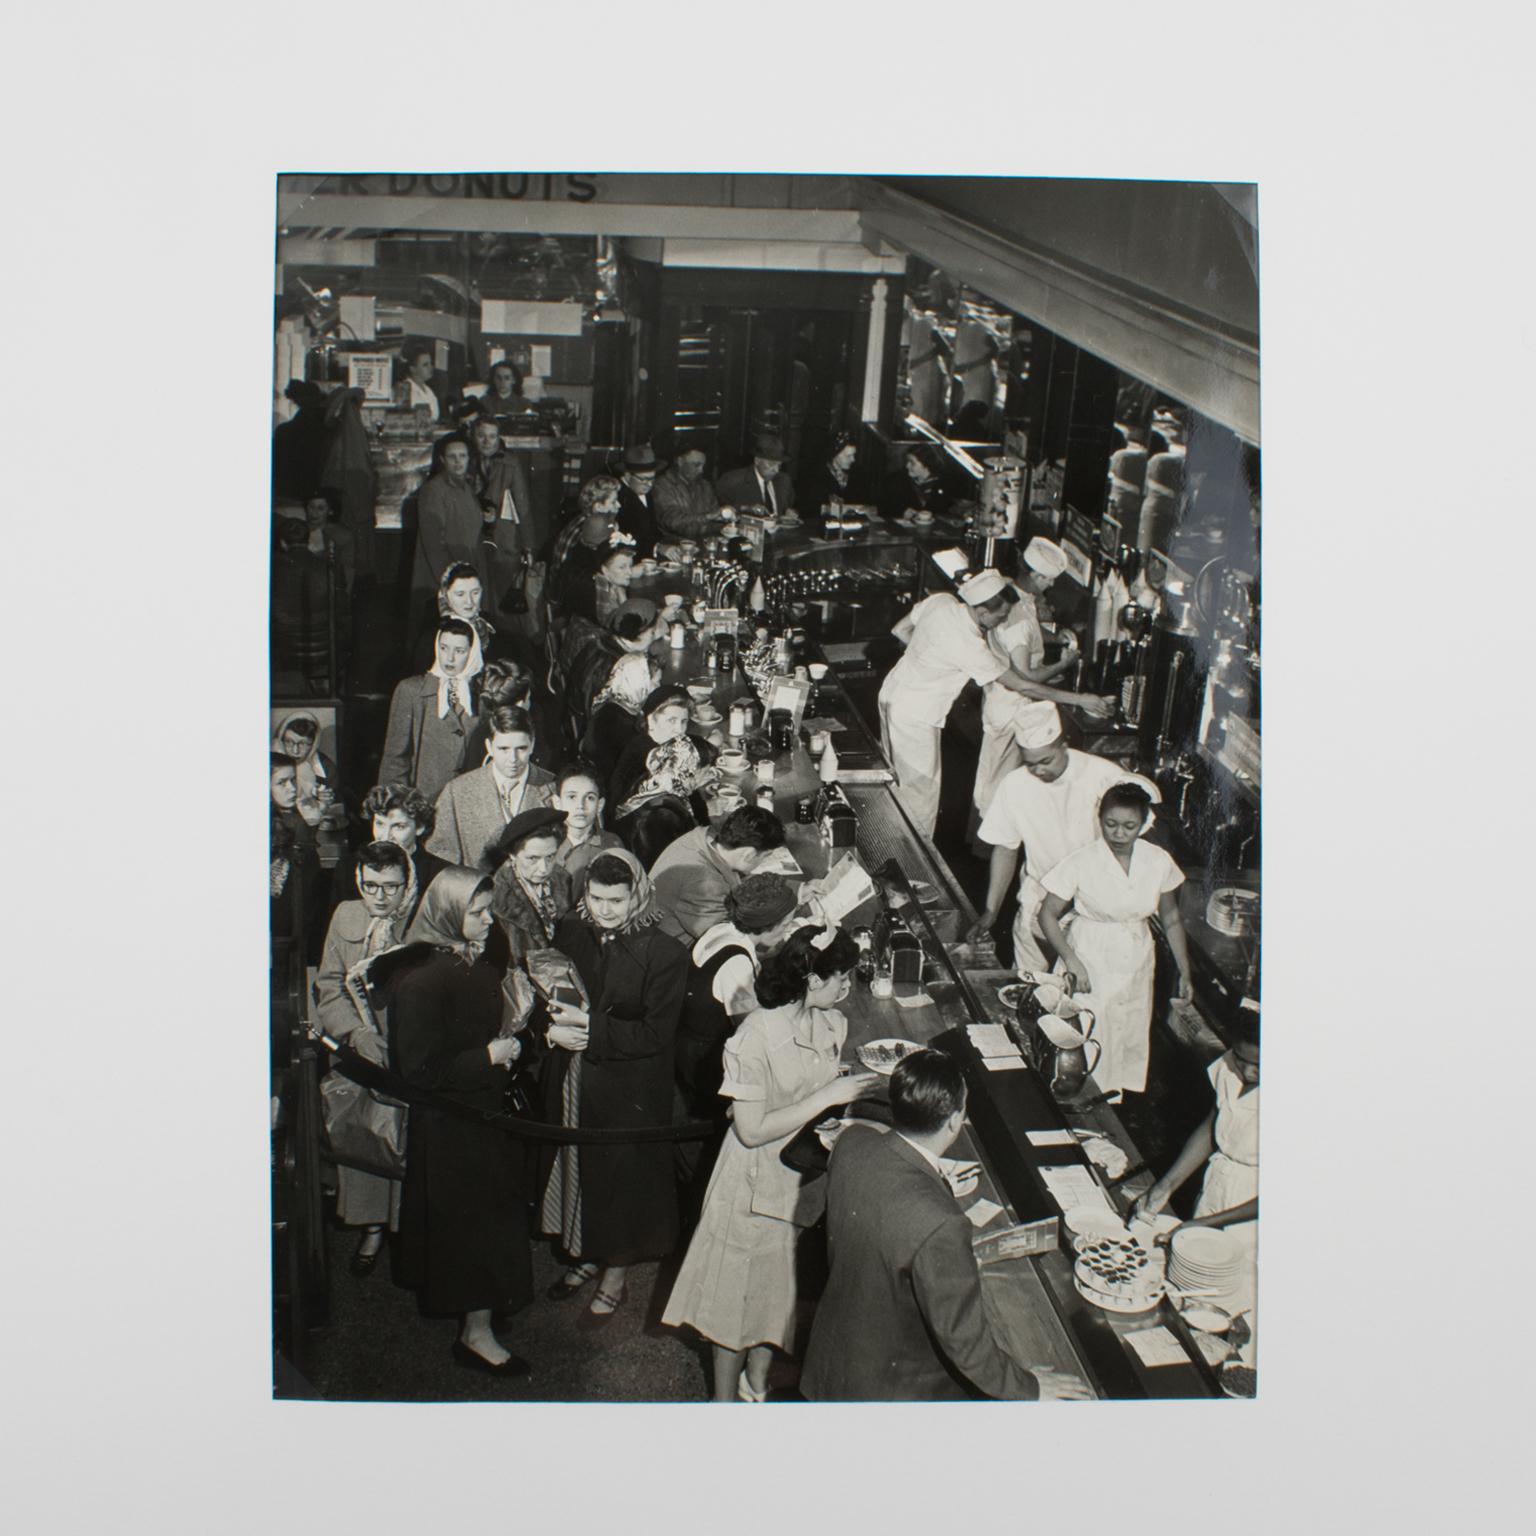 Silber-Gelatine-Schwarz-Weiß-Fotografie „A busy Diner in New York“, 1950 – Photograph von Press Agency Atlantic Press